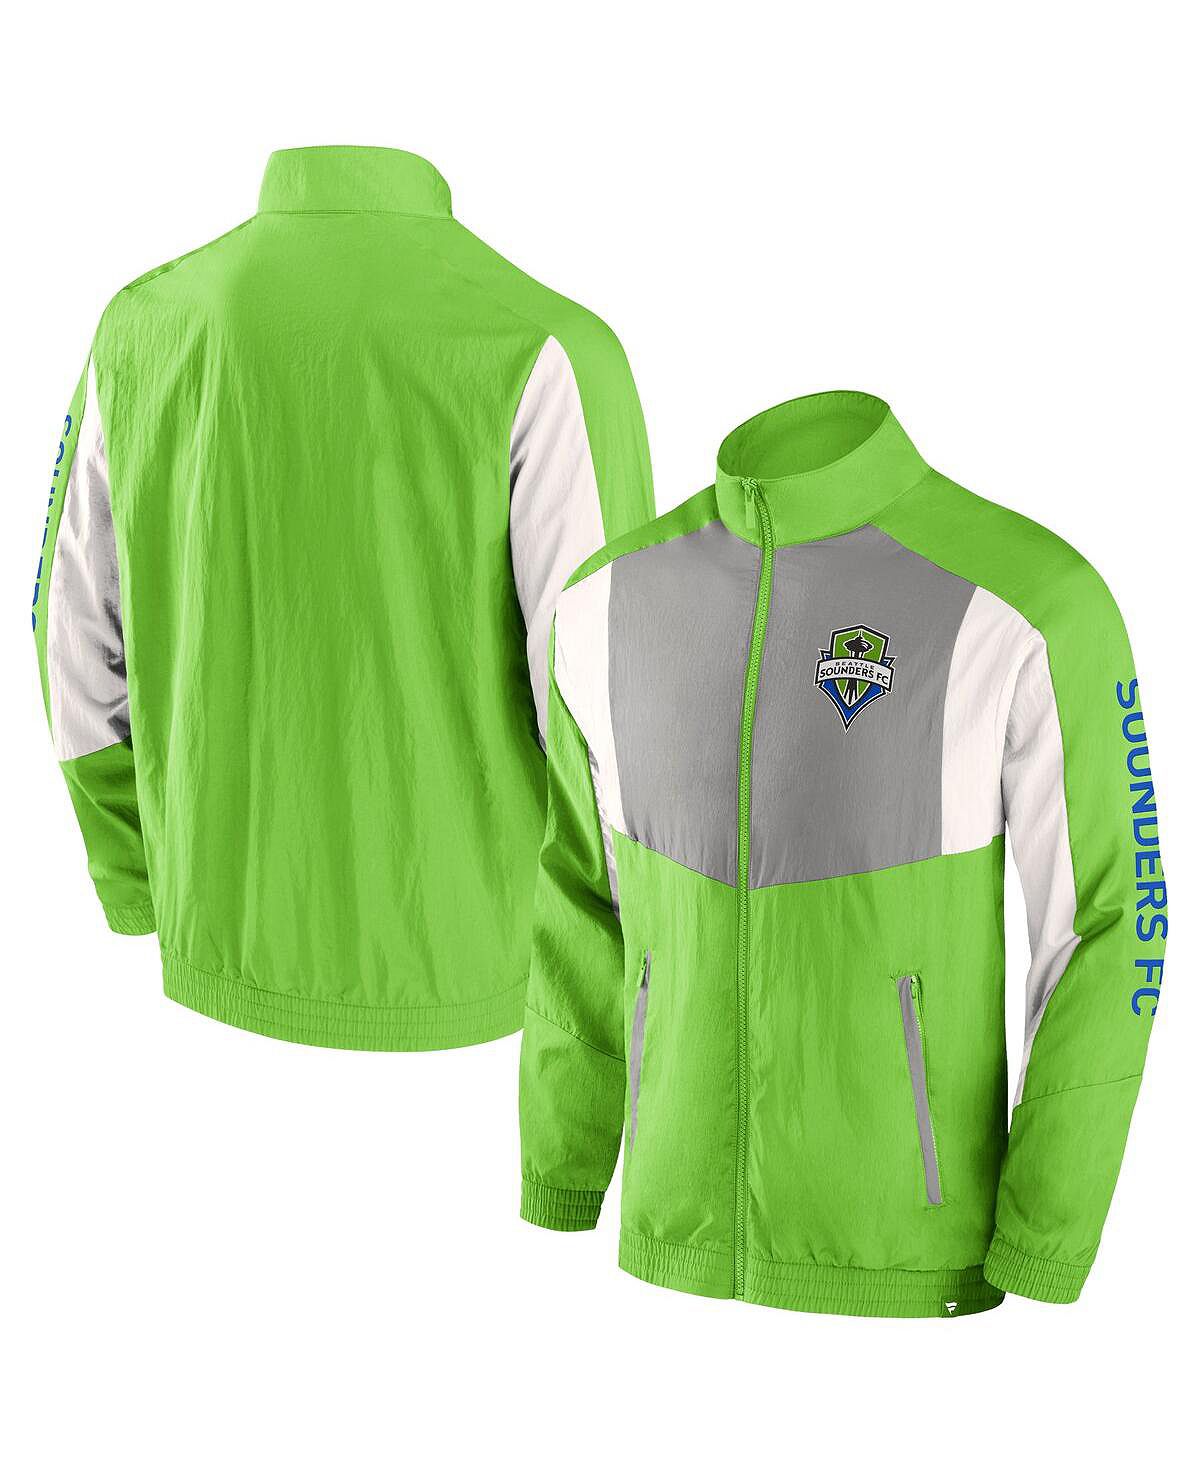 Мужская фирменная спортивная куртка Rave Green Seattle Sounders FC Net Goal с молнией во всю длину и регланом Fanatics